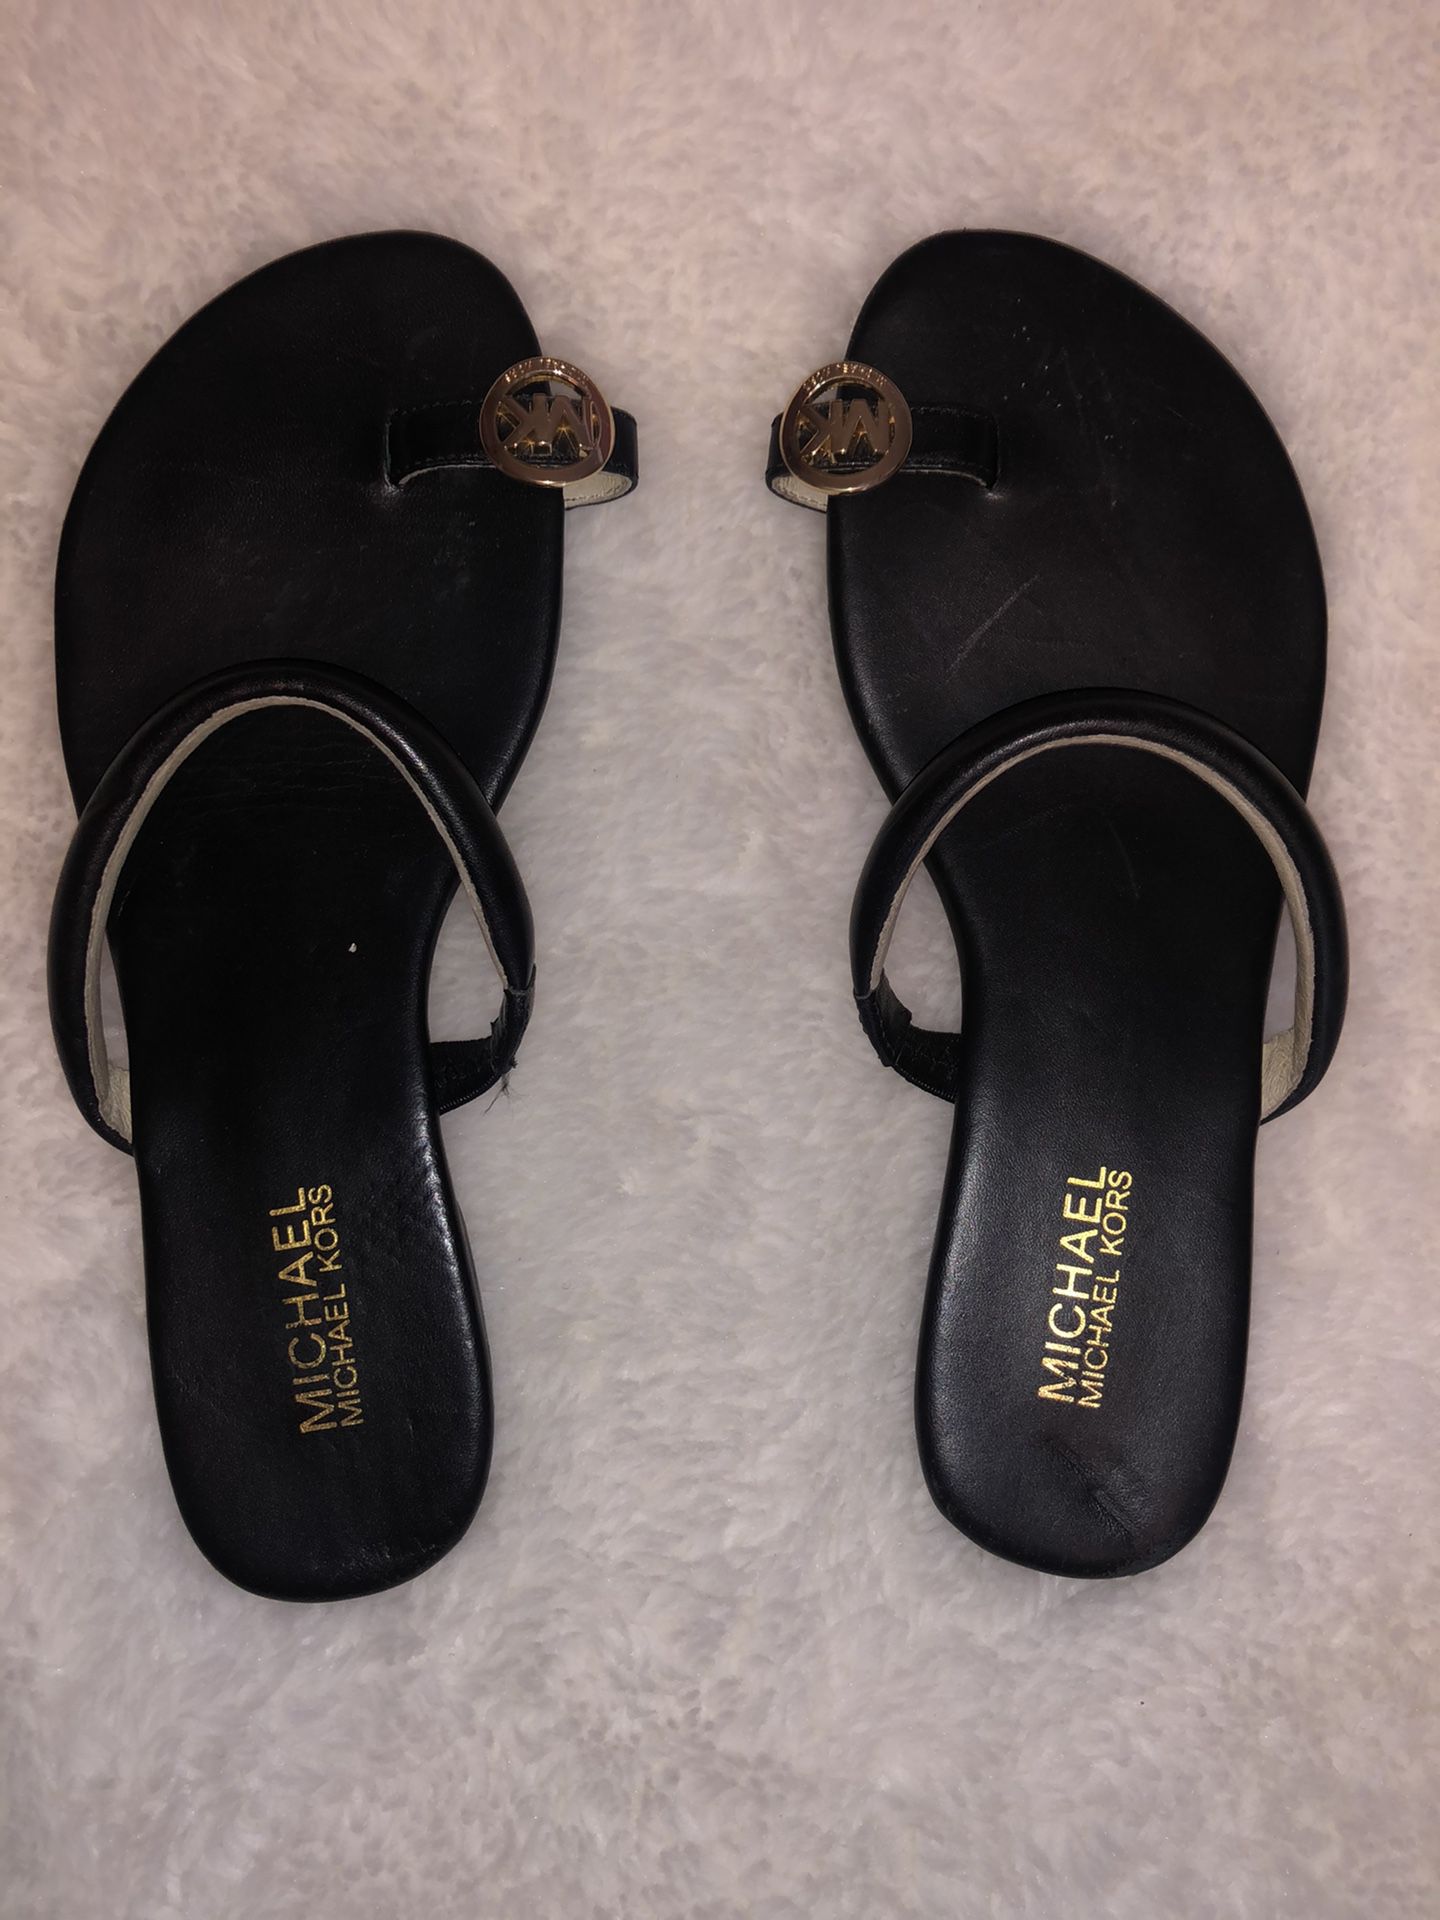 Black Michael kors sandals size 8